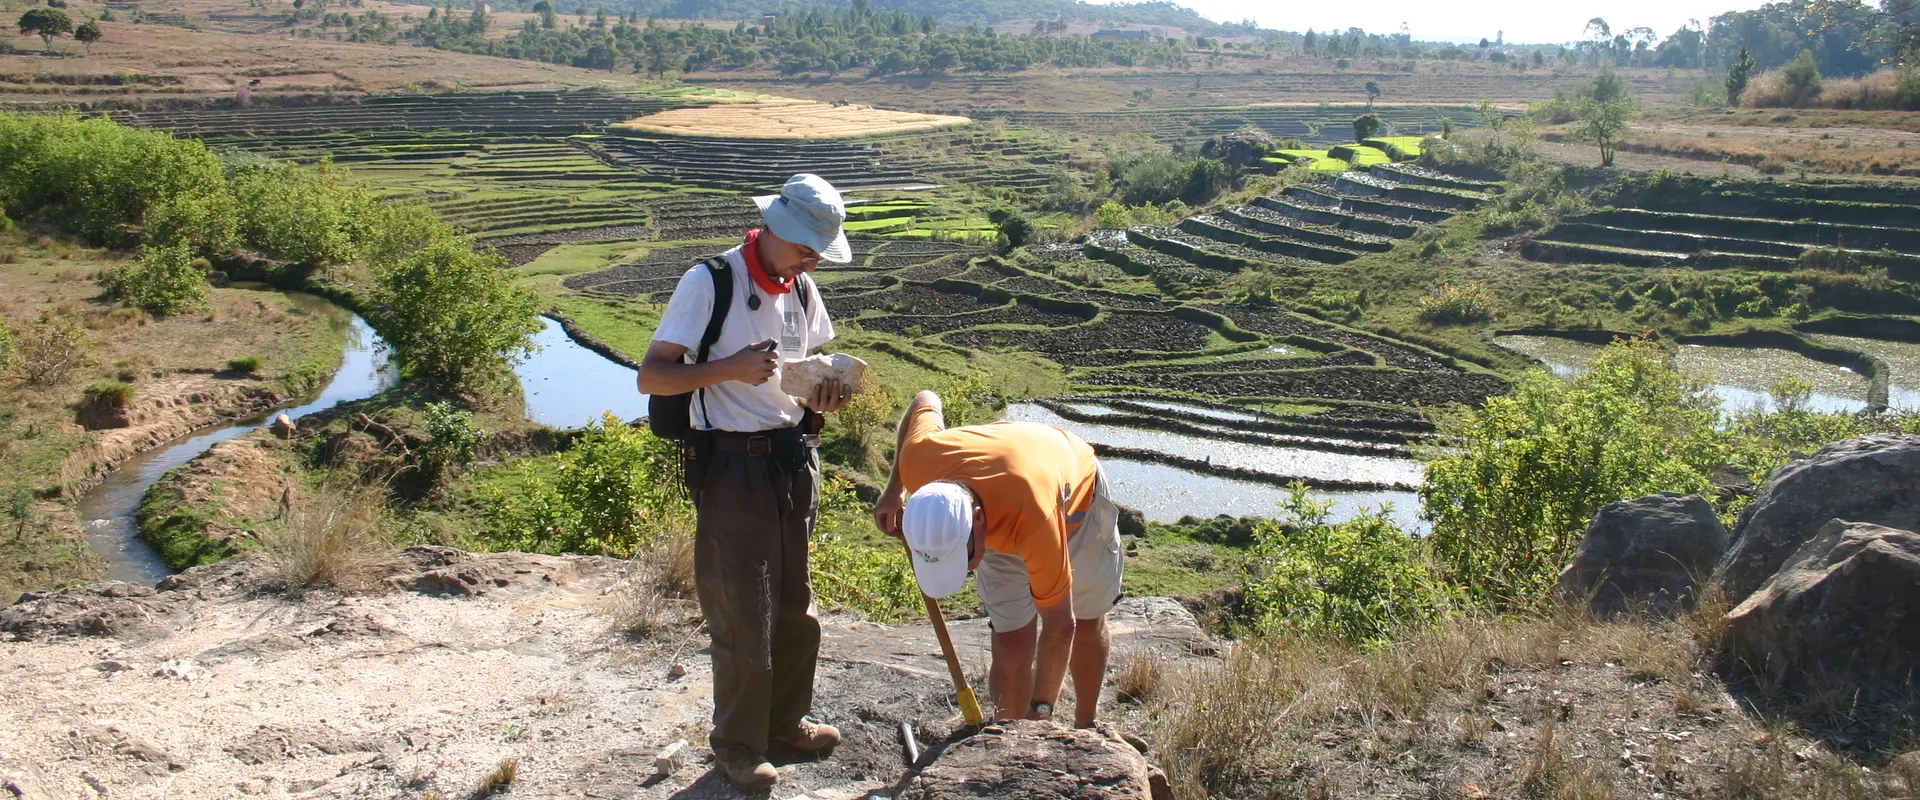 Campagne d’exploration pour la réalisation d’une synthèse géologique et métallogénique, Madagascar